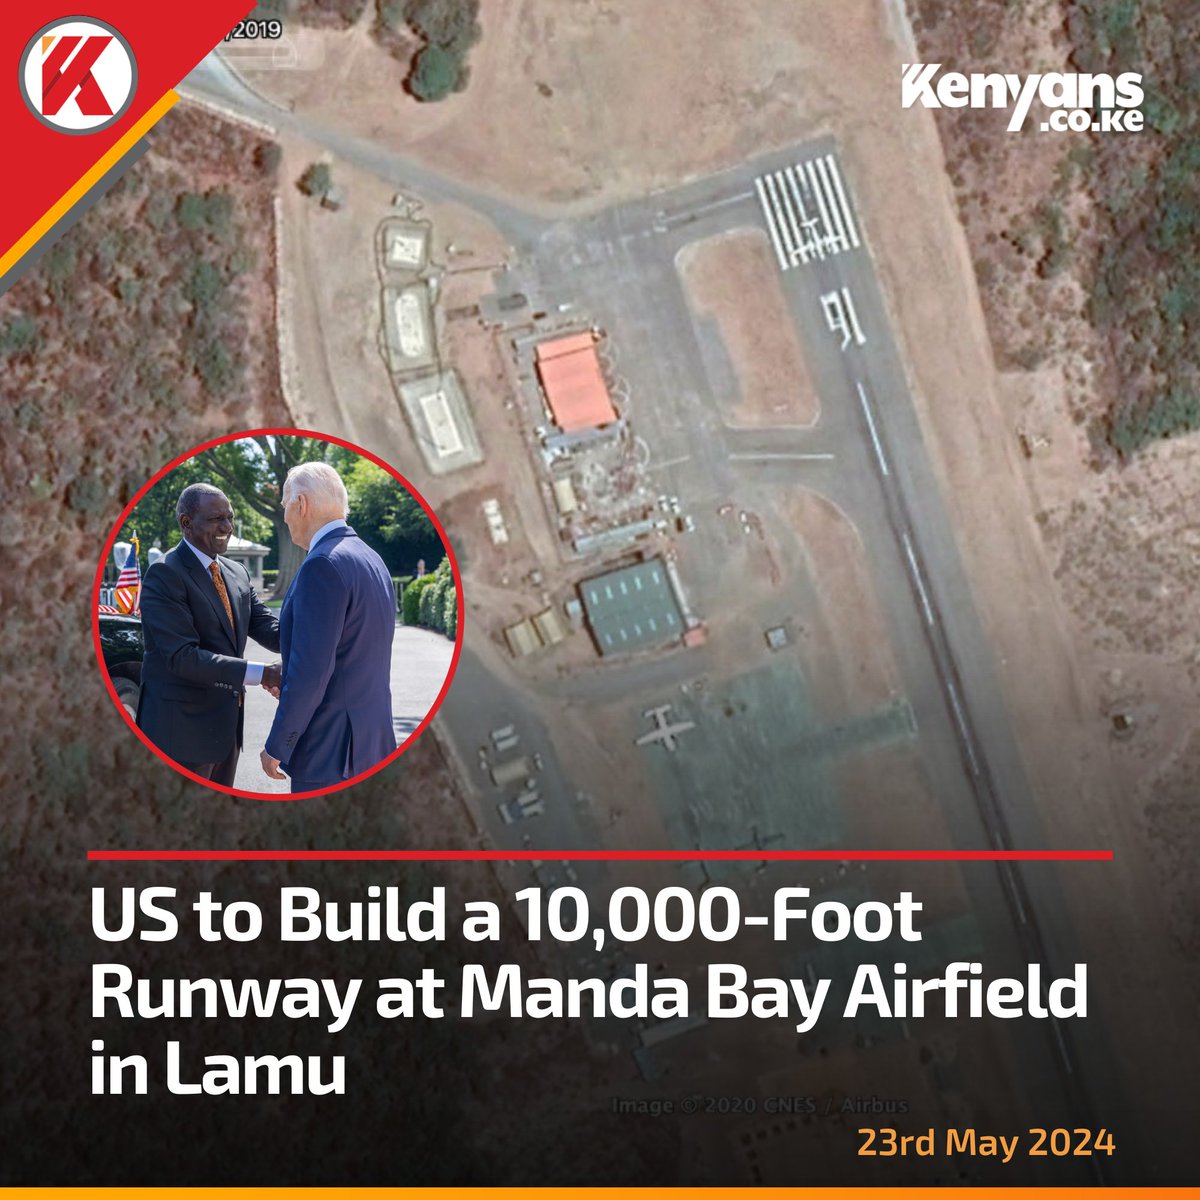 US to build a 10,000-foot runway at Manda Bay Airfield in Lamu